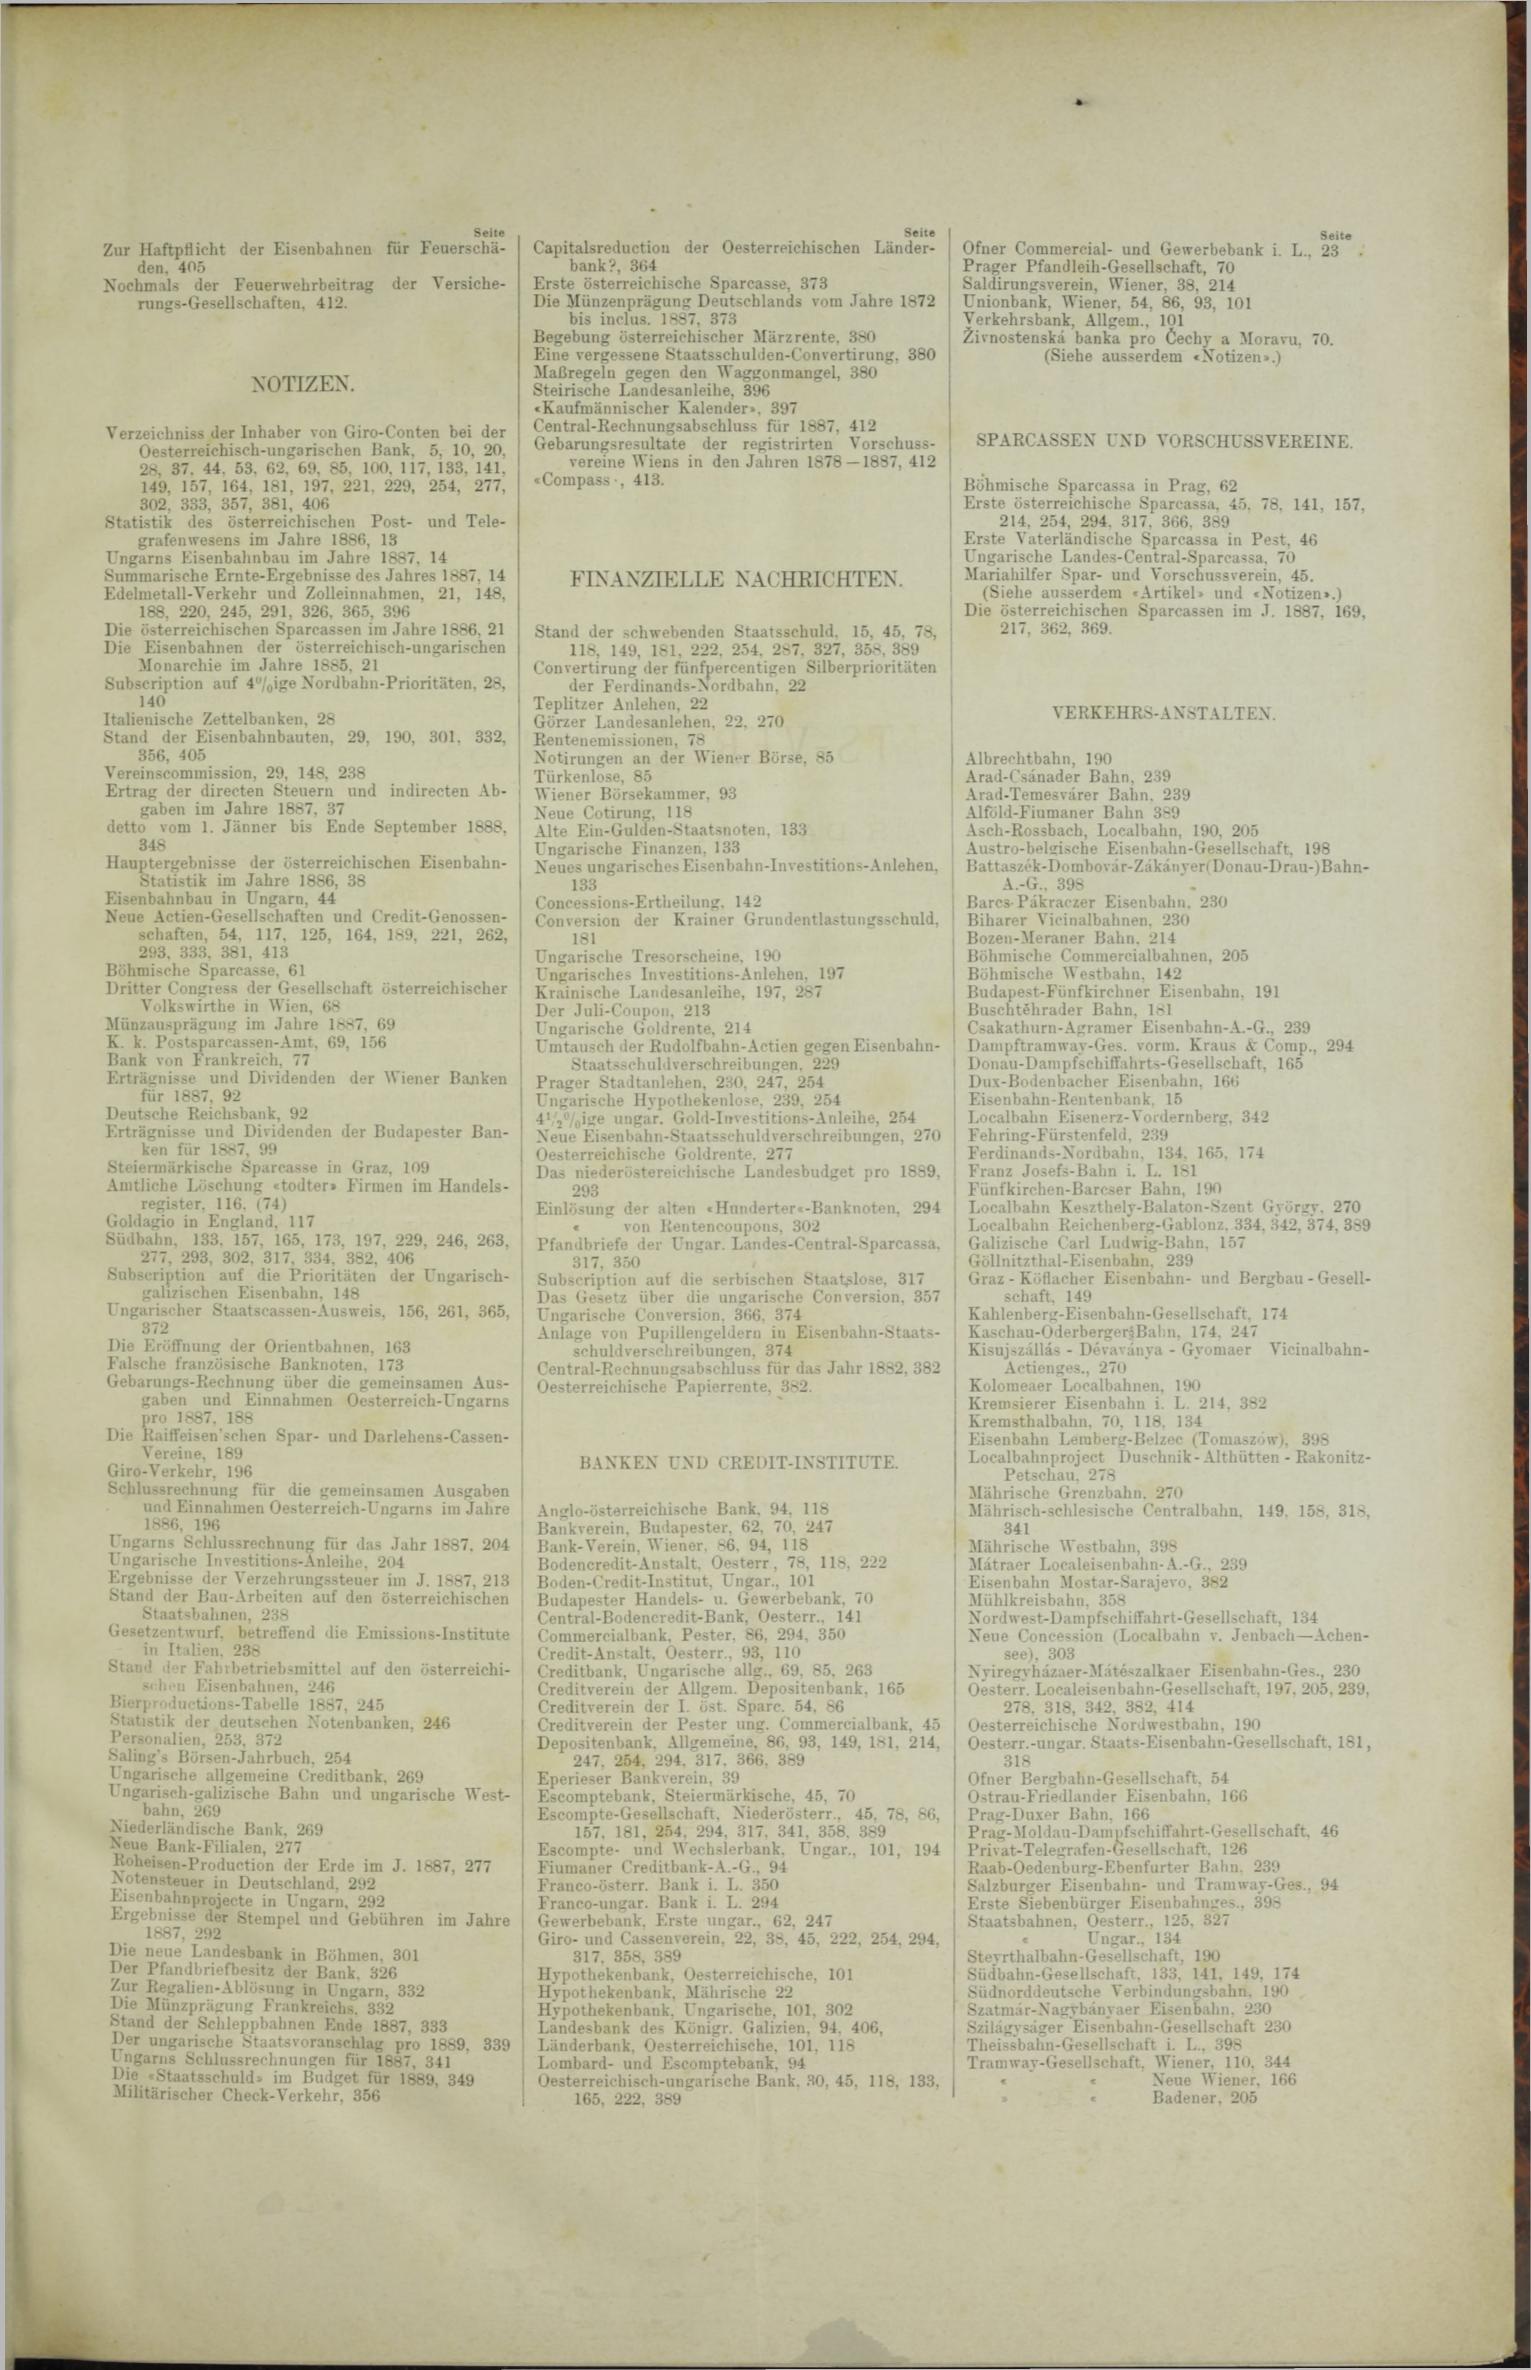 Der Tresor 16.02.1888 - Seite 11